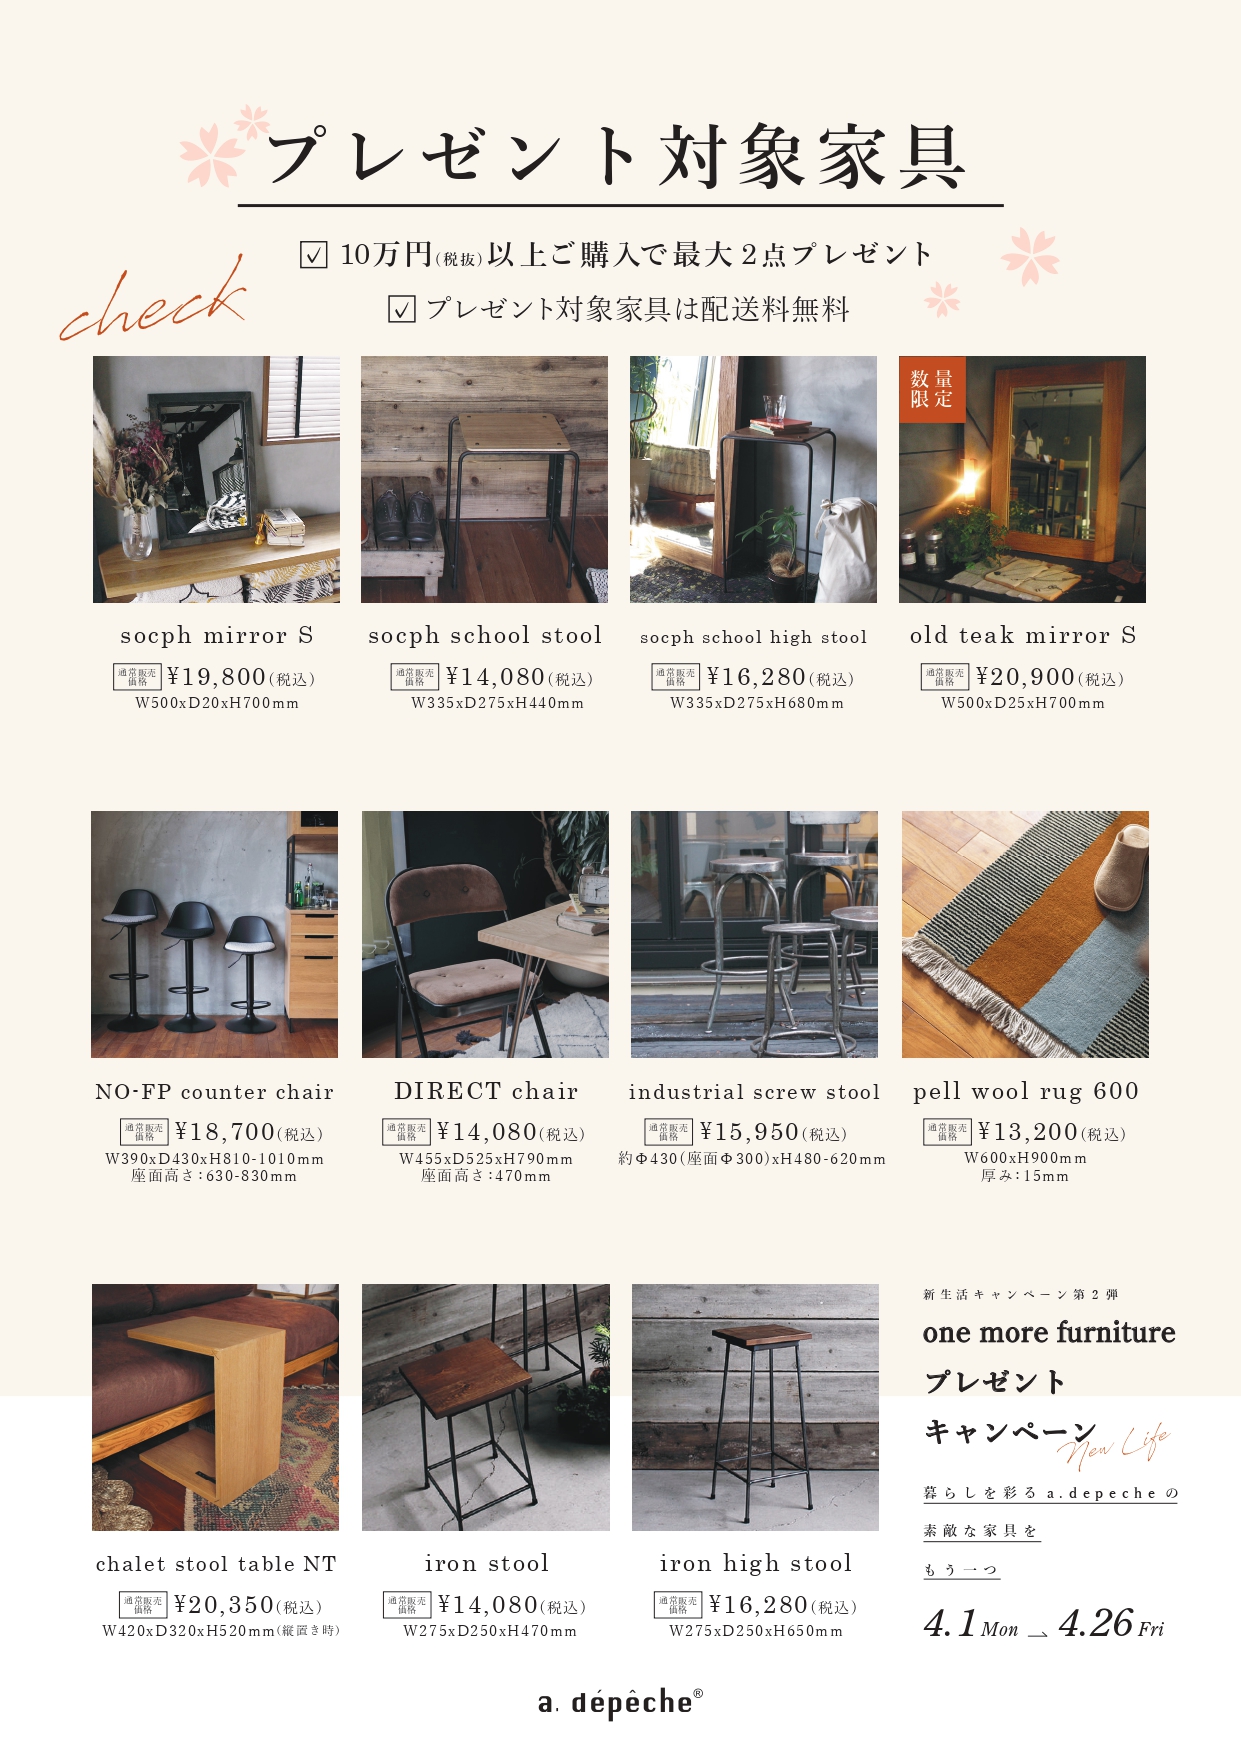 新生活キャンペーン第二弾】one more furniture プレゼント ...